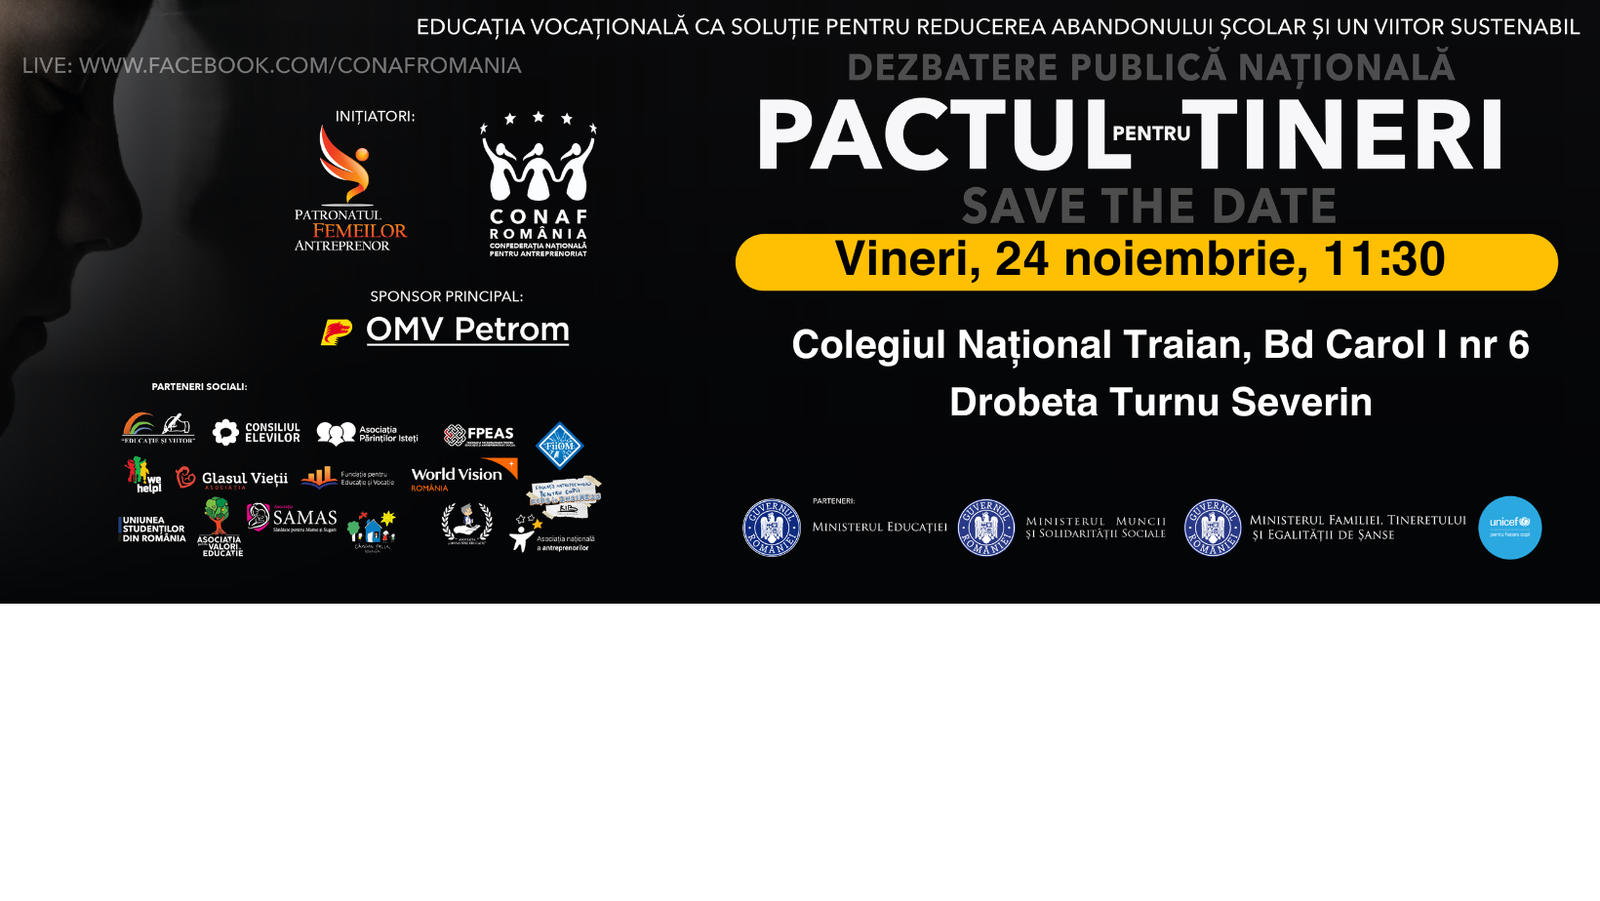 Romanian Venture Forum